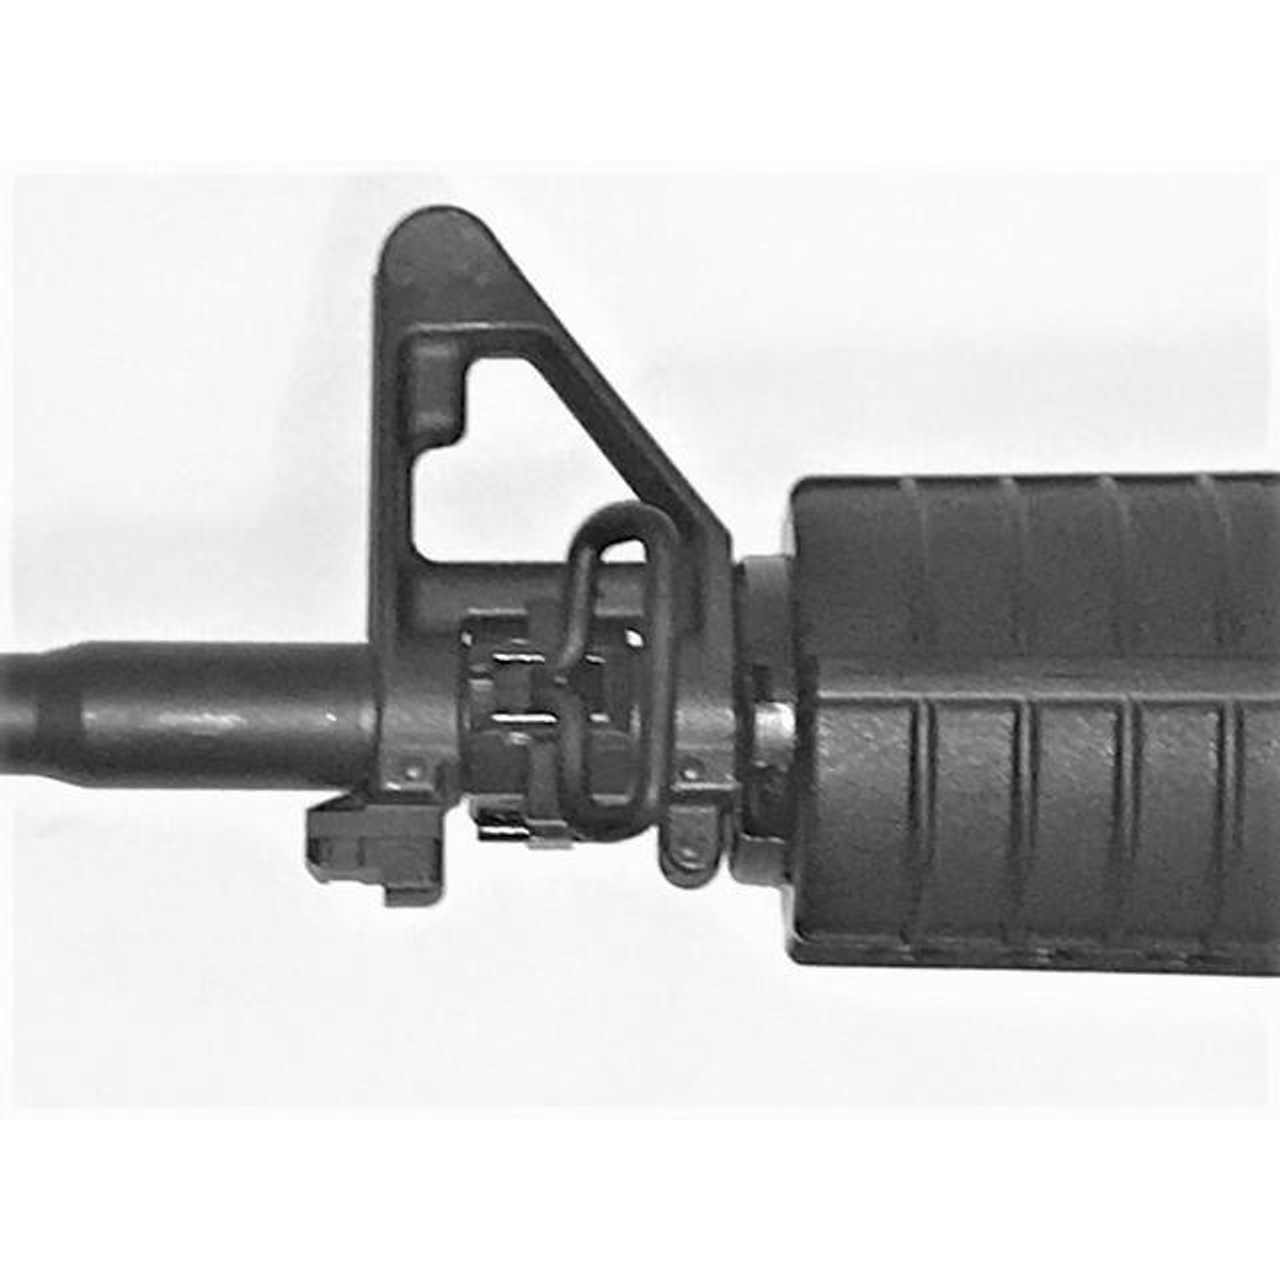 Colt tactical front sling, side swivel mount